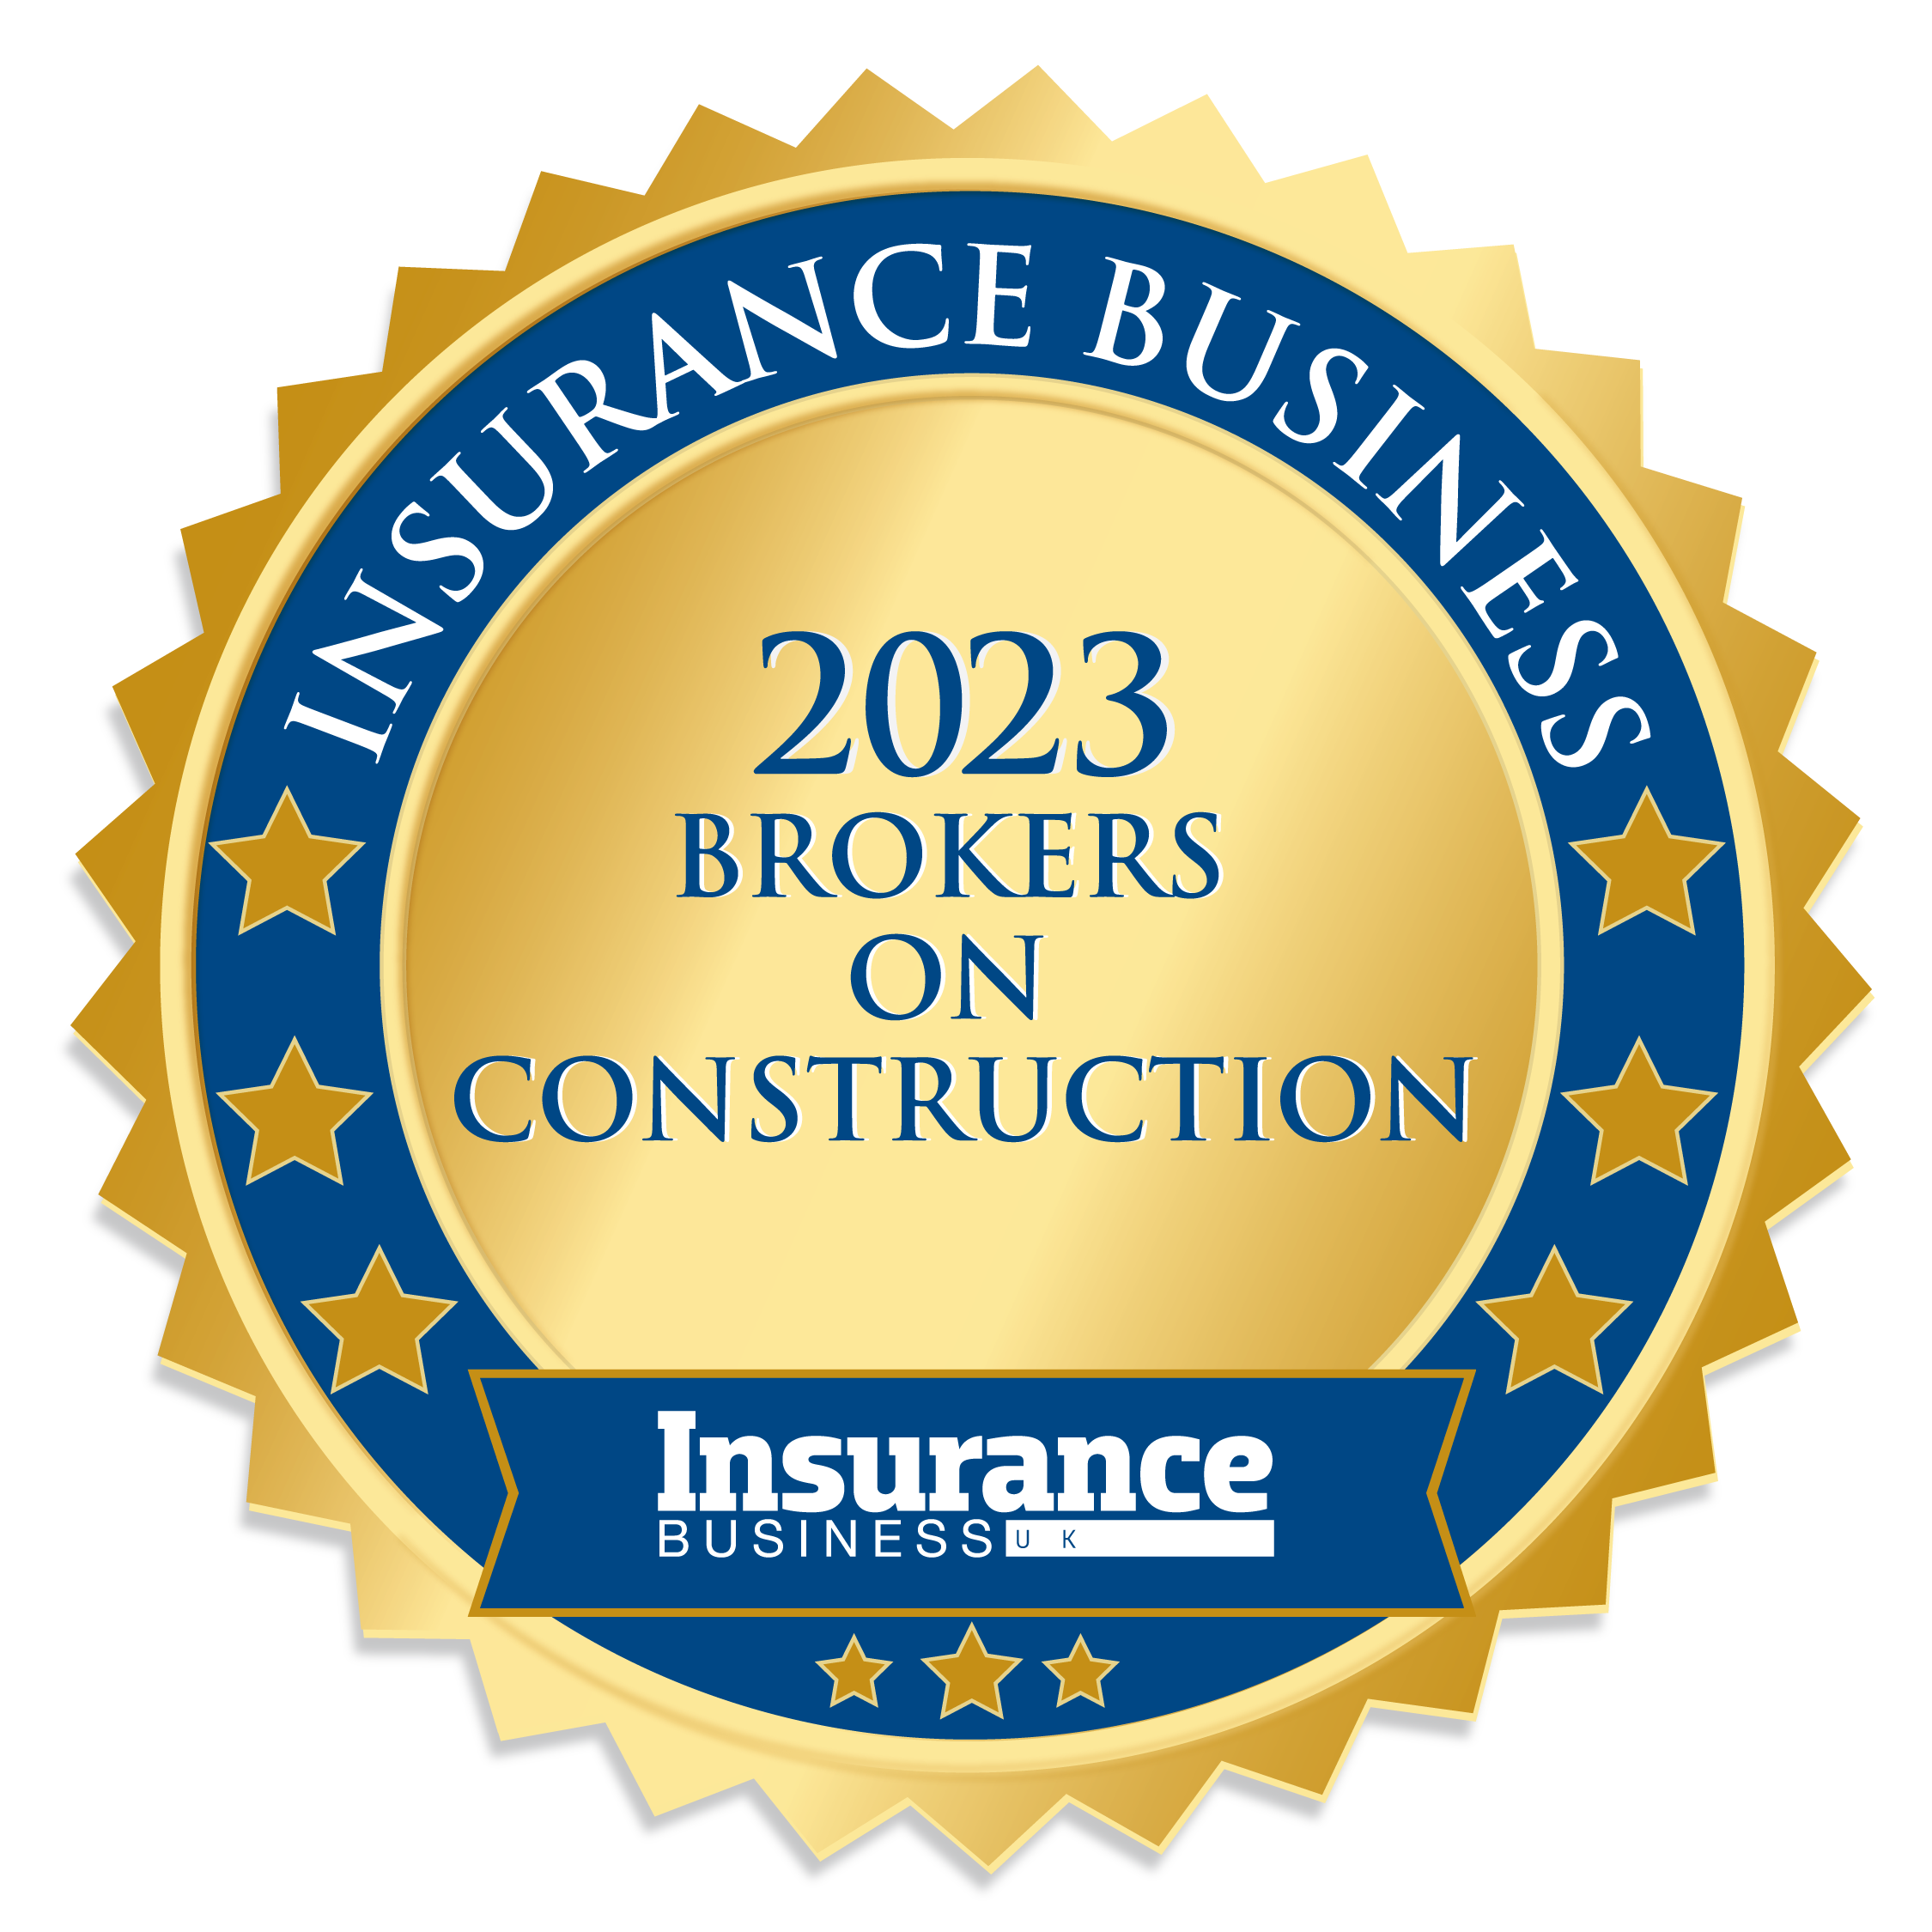 Insurance Business UK - 2023 QBE 5-Star award winner